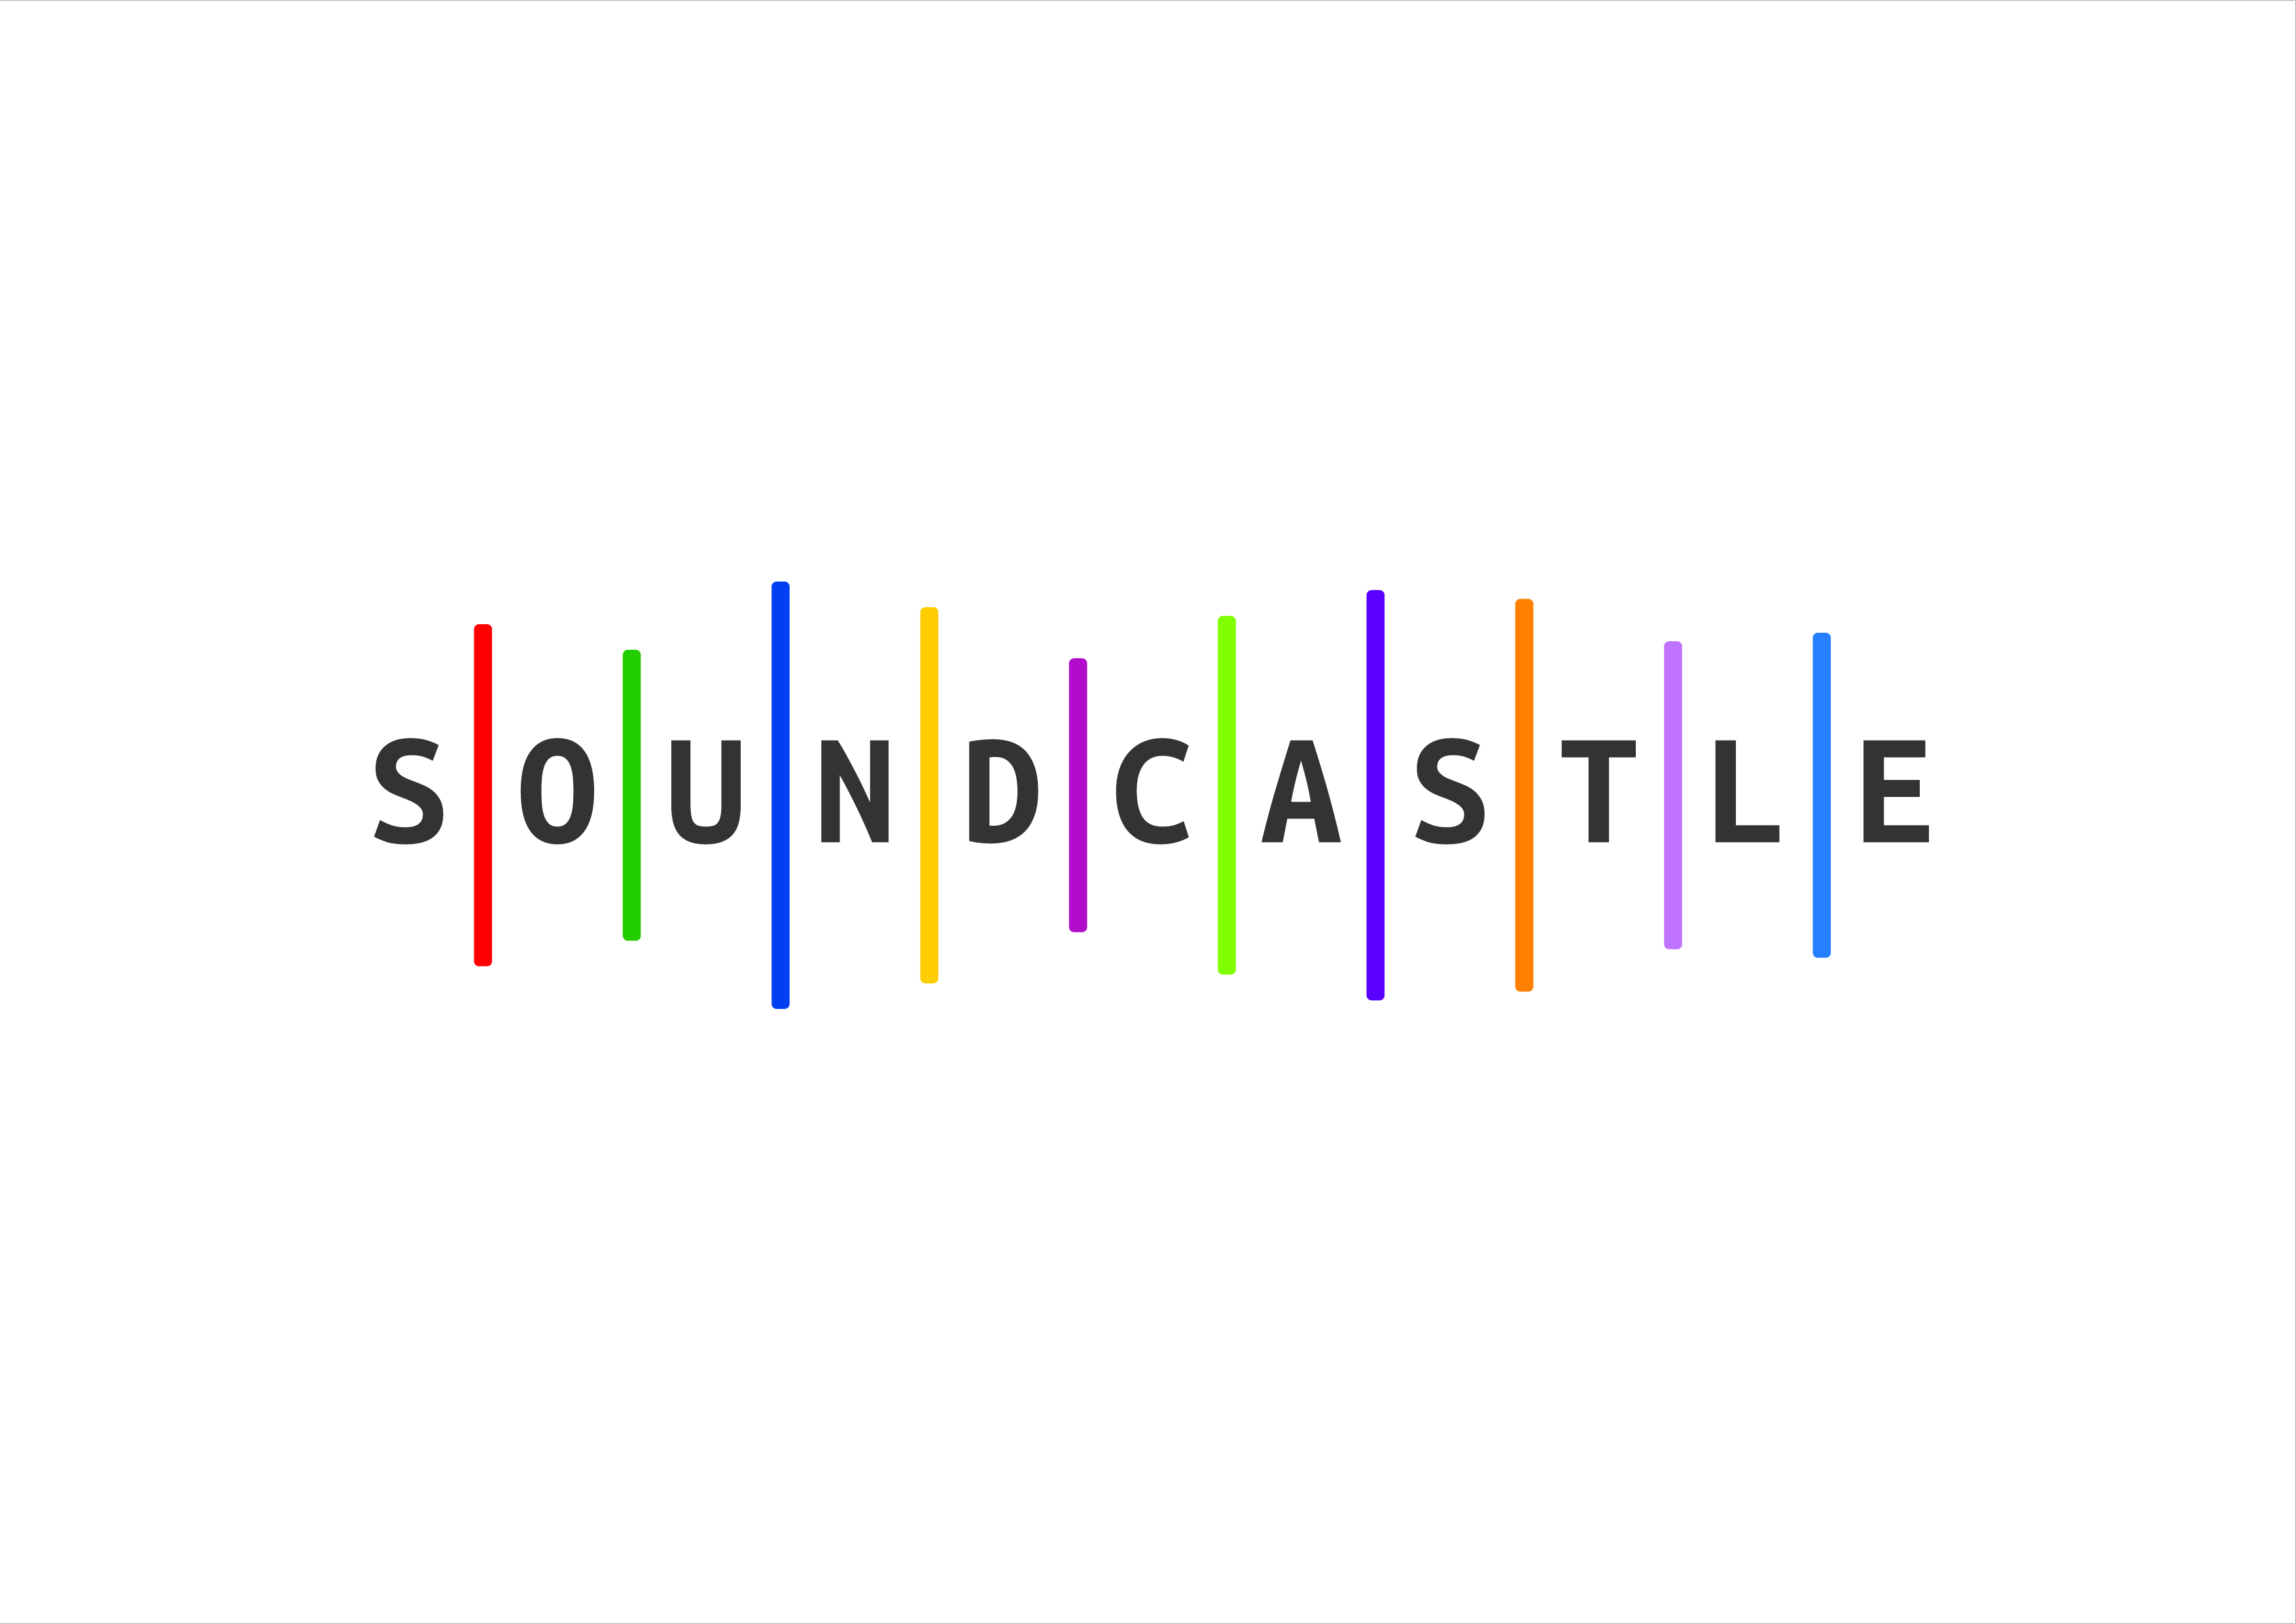 Soundcastle Ltd logo